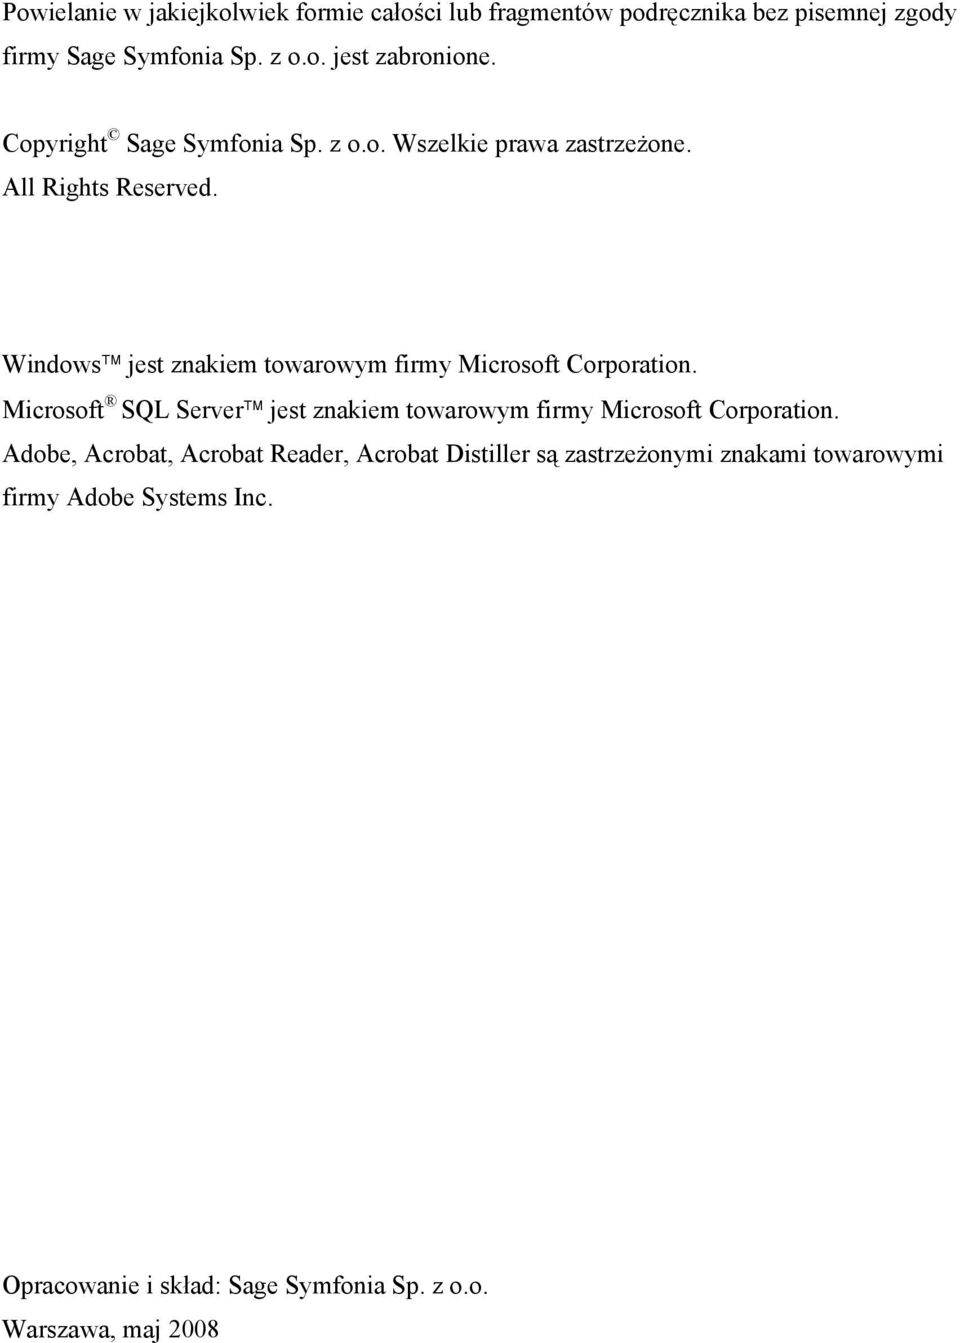 Windows jest znakiem towarowym firmy Microsoft Corporation. Microsoft SQL Server jest znakiem towarowym firmy Microsoft Corporation.